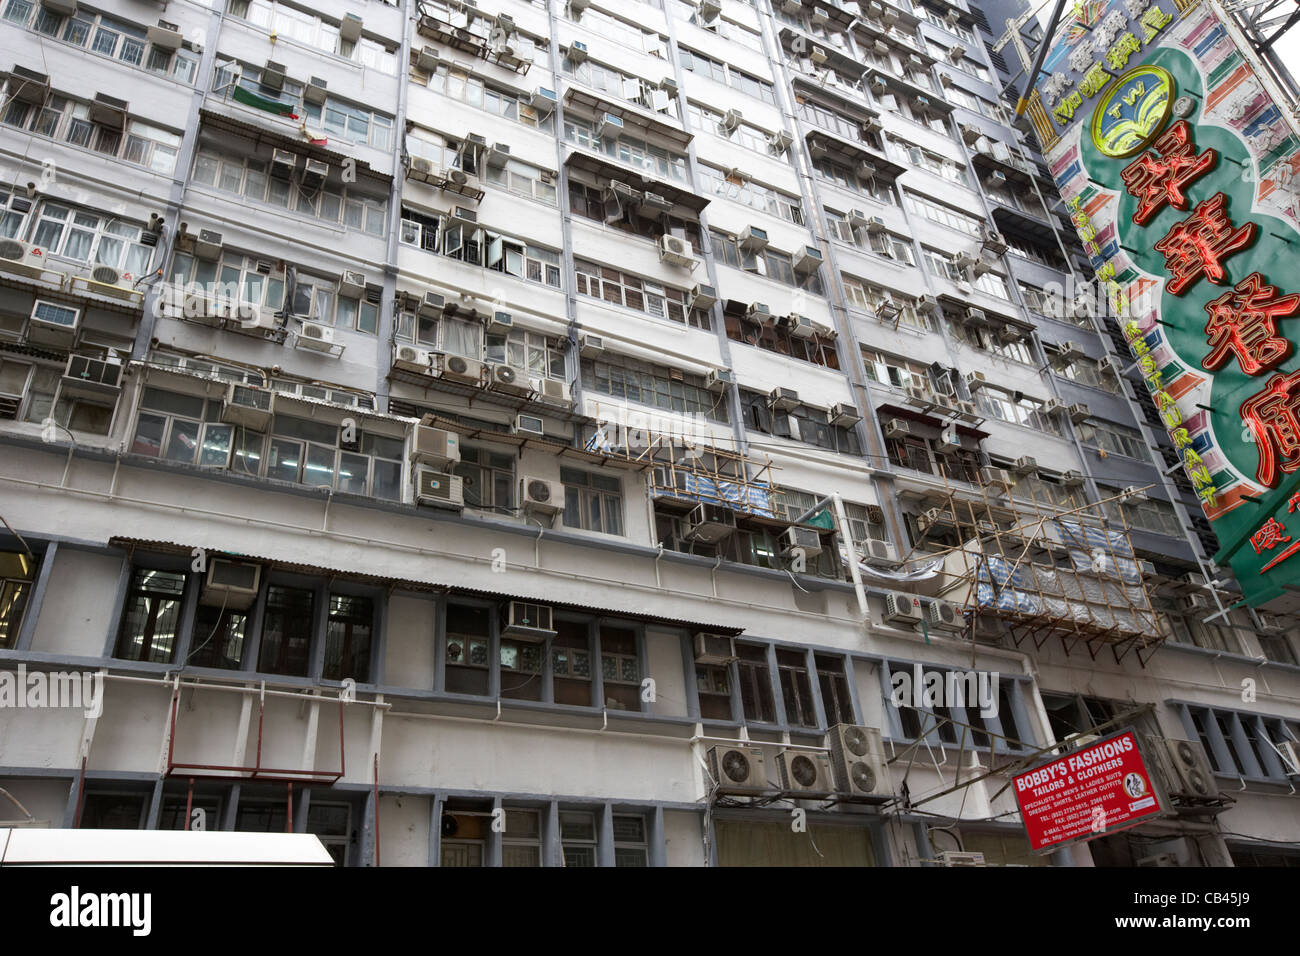 densely populated accommodation block of mirador mansions tsim sha tsui kowloon hong kong hksar china Stock Photo